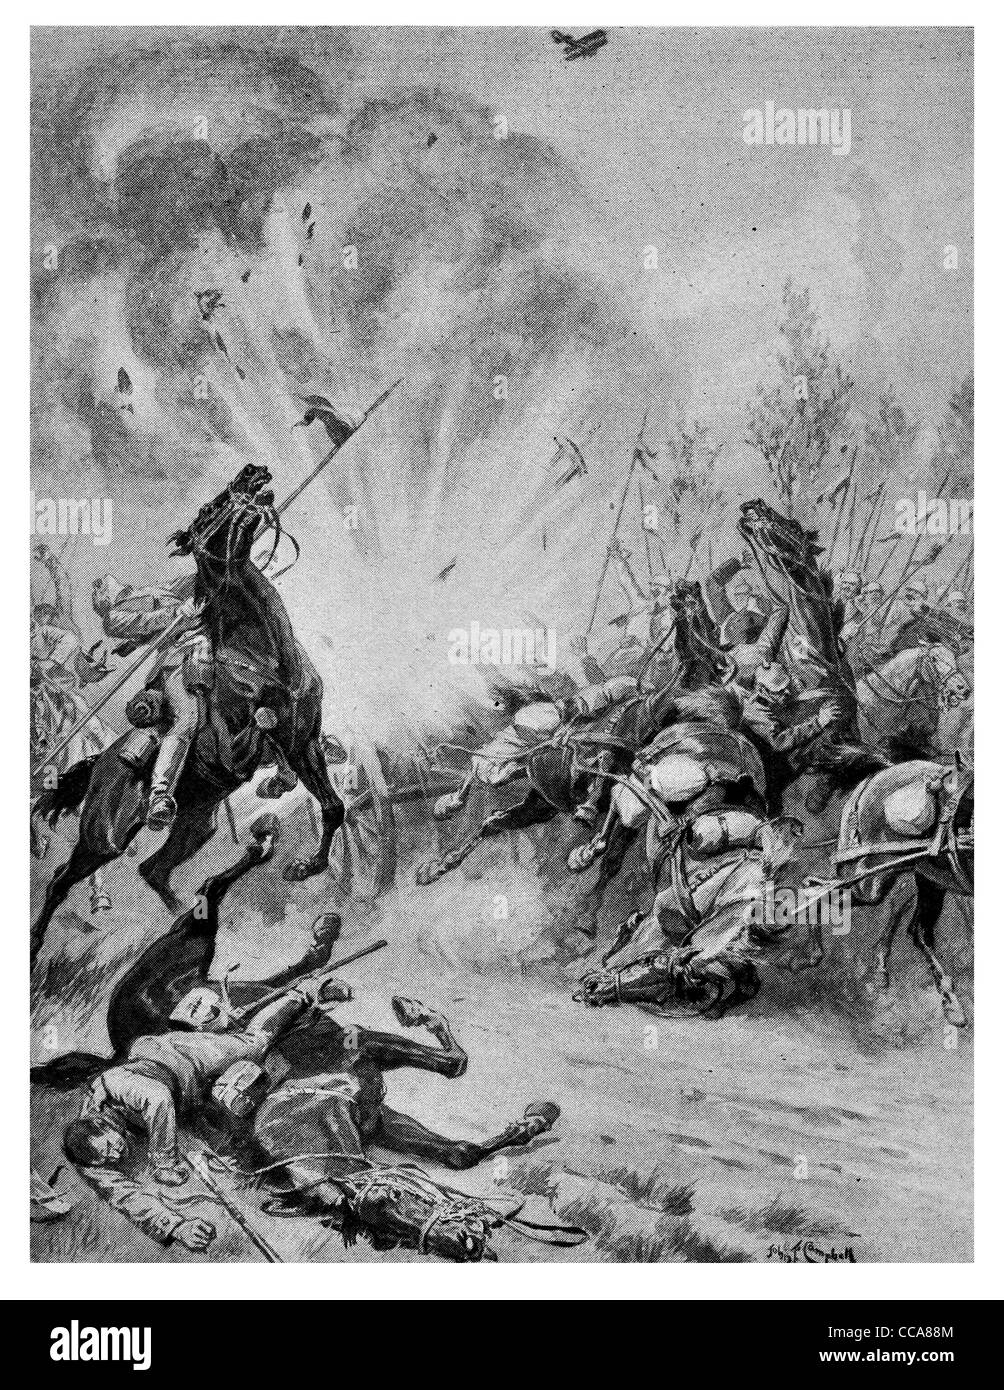 1914 Bombardier britannique Royal Flying Corps de cavalerie allemande attentat frappant de la remorque de munitions explosives explosion Banque D'Images